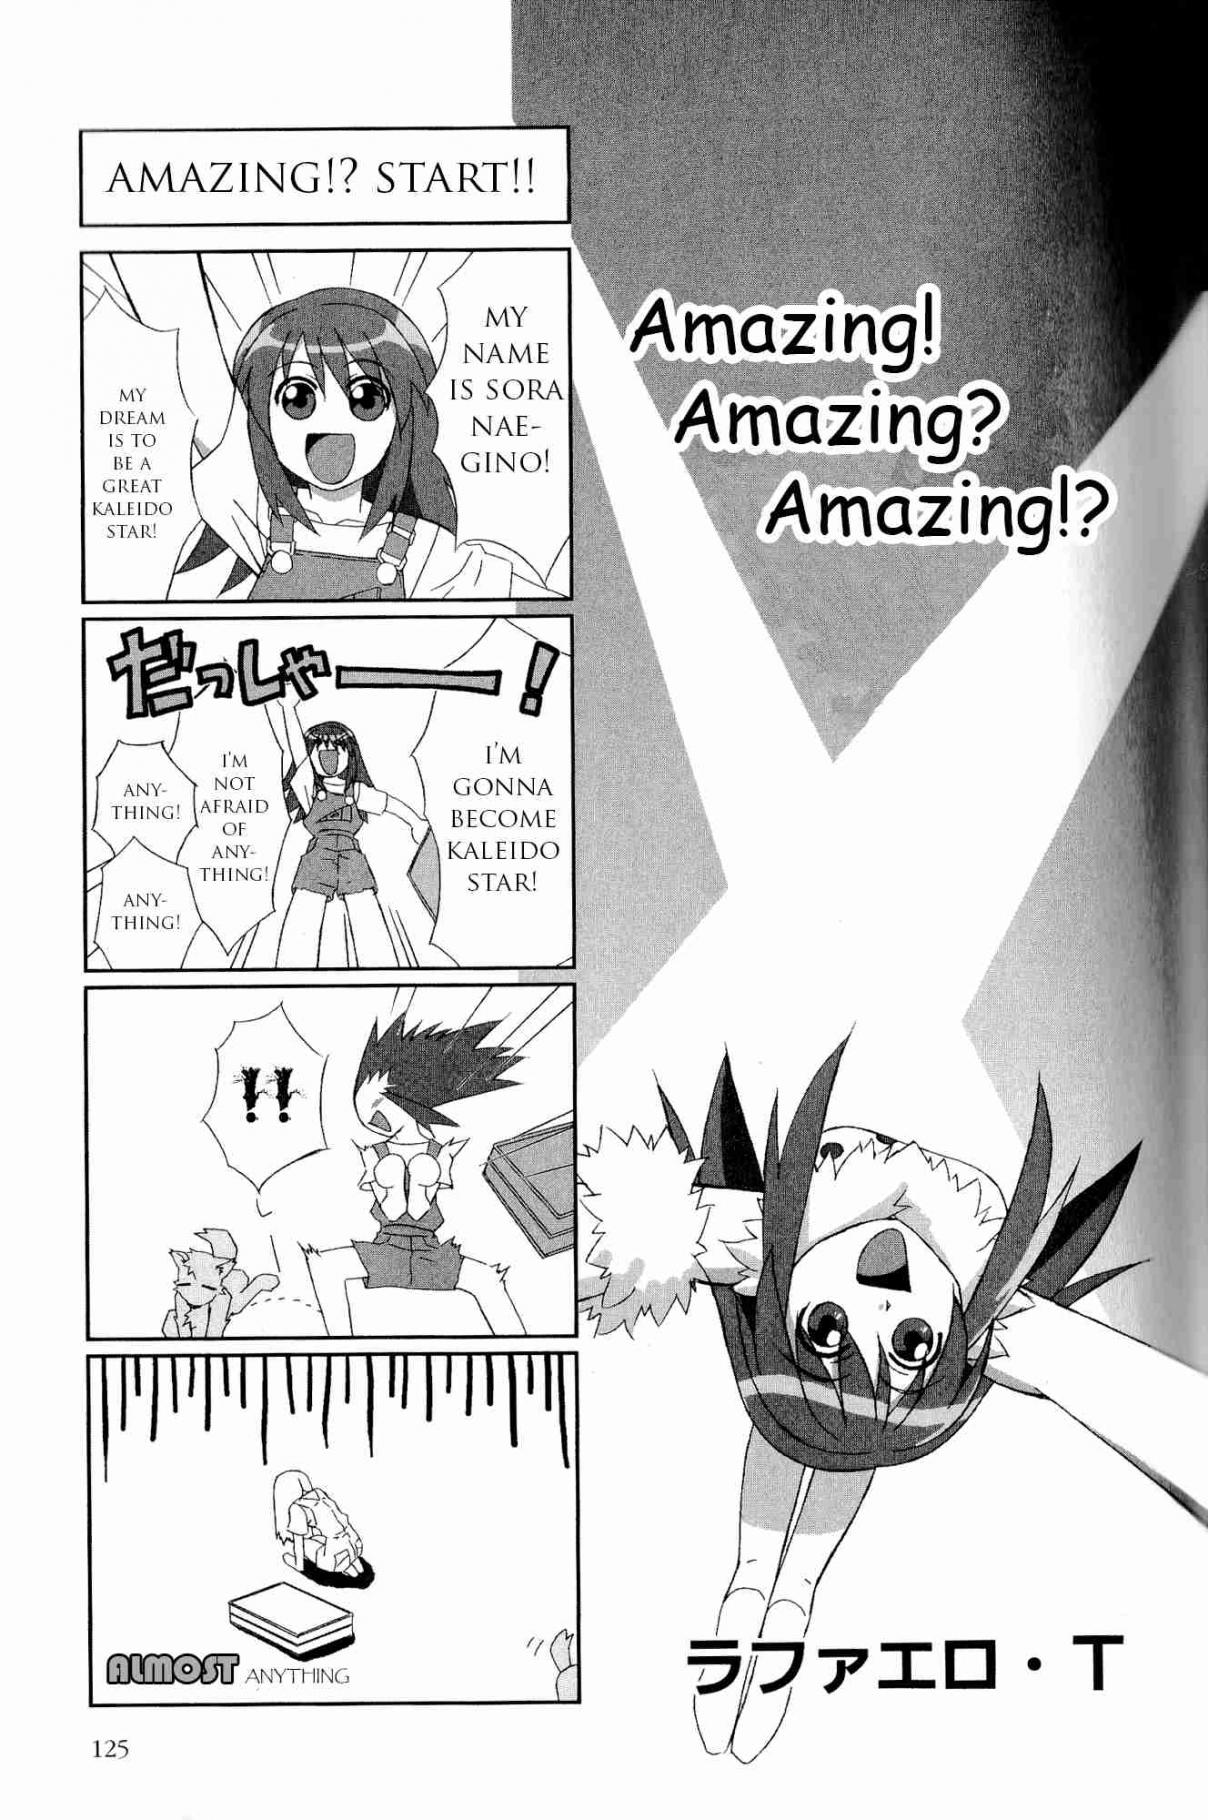 Kaleido Star Comic Anthology Vol. 1 Ch. 12 Amazing! Amazing? Amazing?!